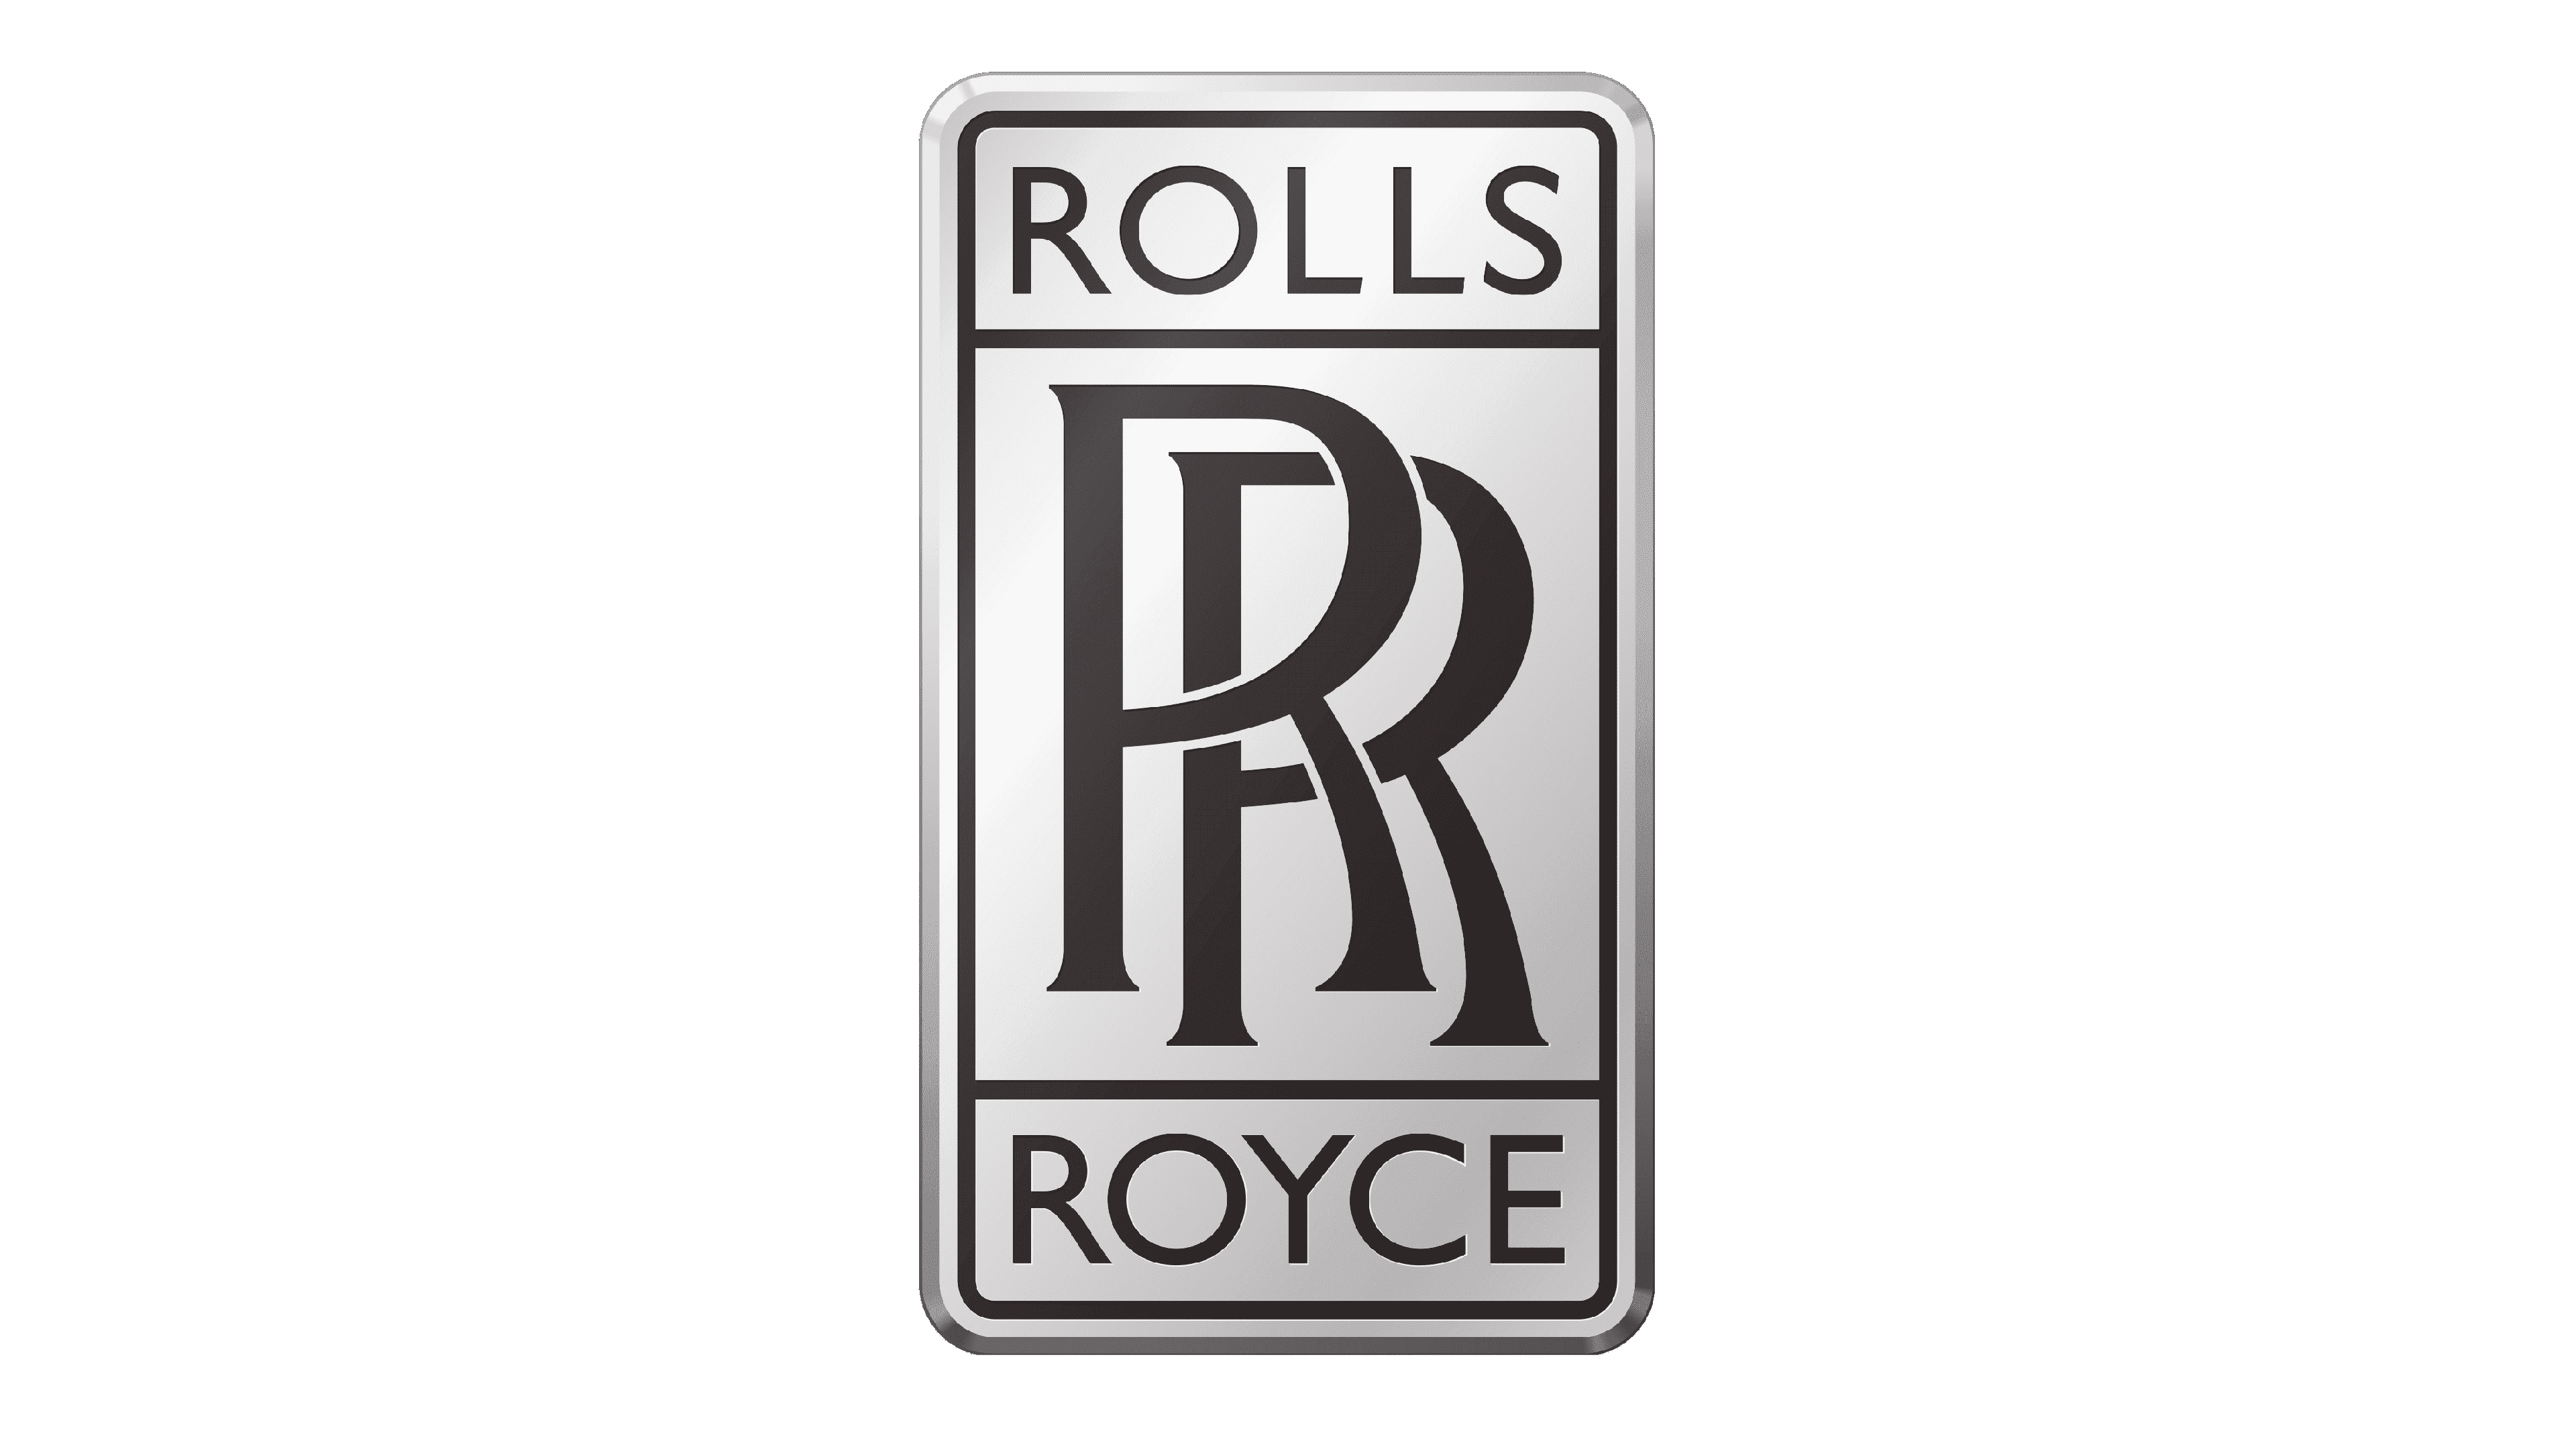 Chi tiết 59 về rolls royce company logo hay nhất  Du học Akina